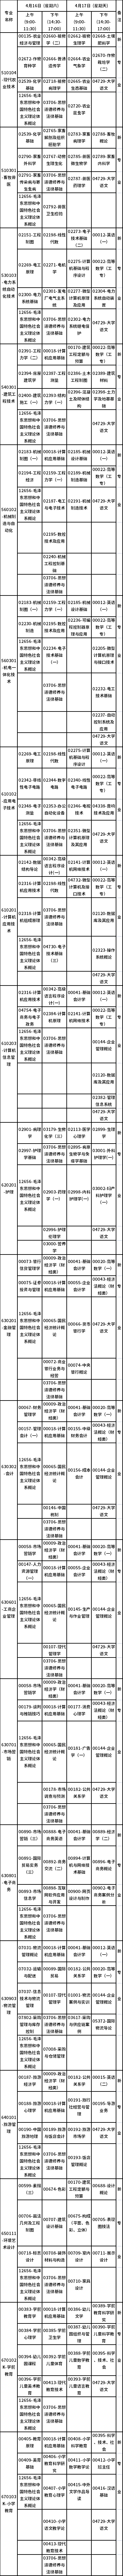 广西2022年4月自考课程考试安排表